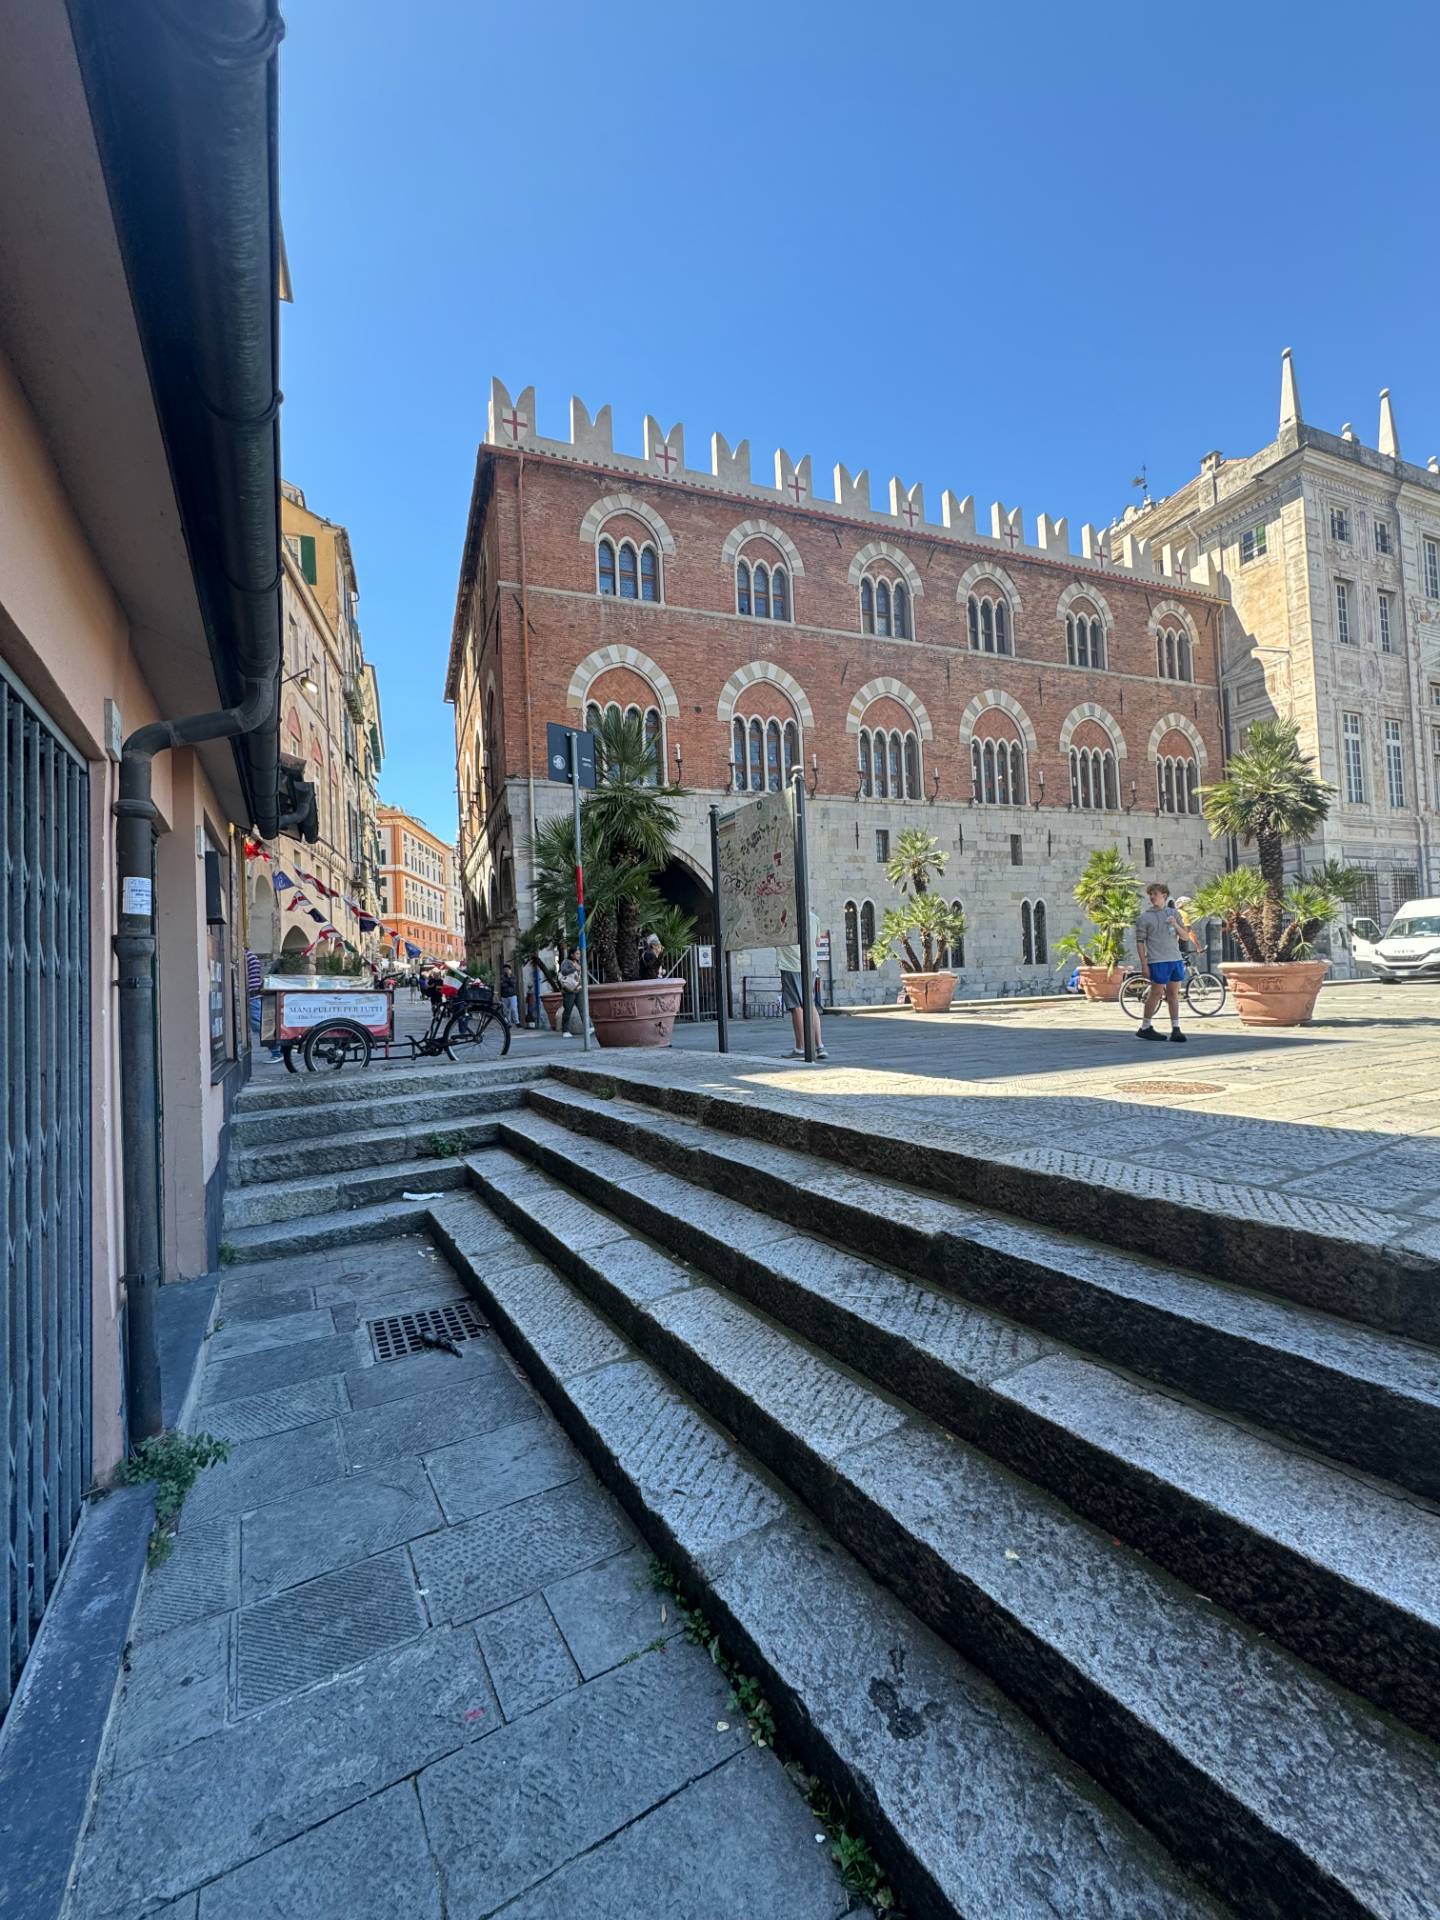 Locale commerciale in vendita, Genova centro storico